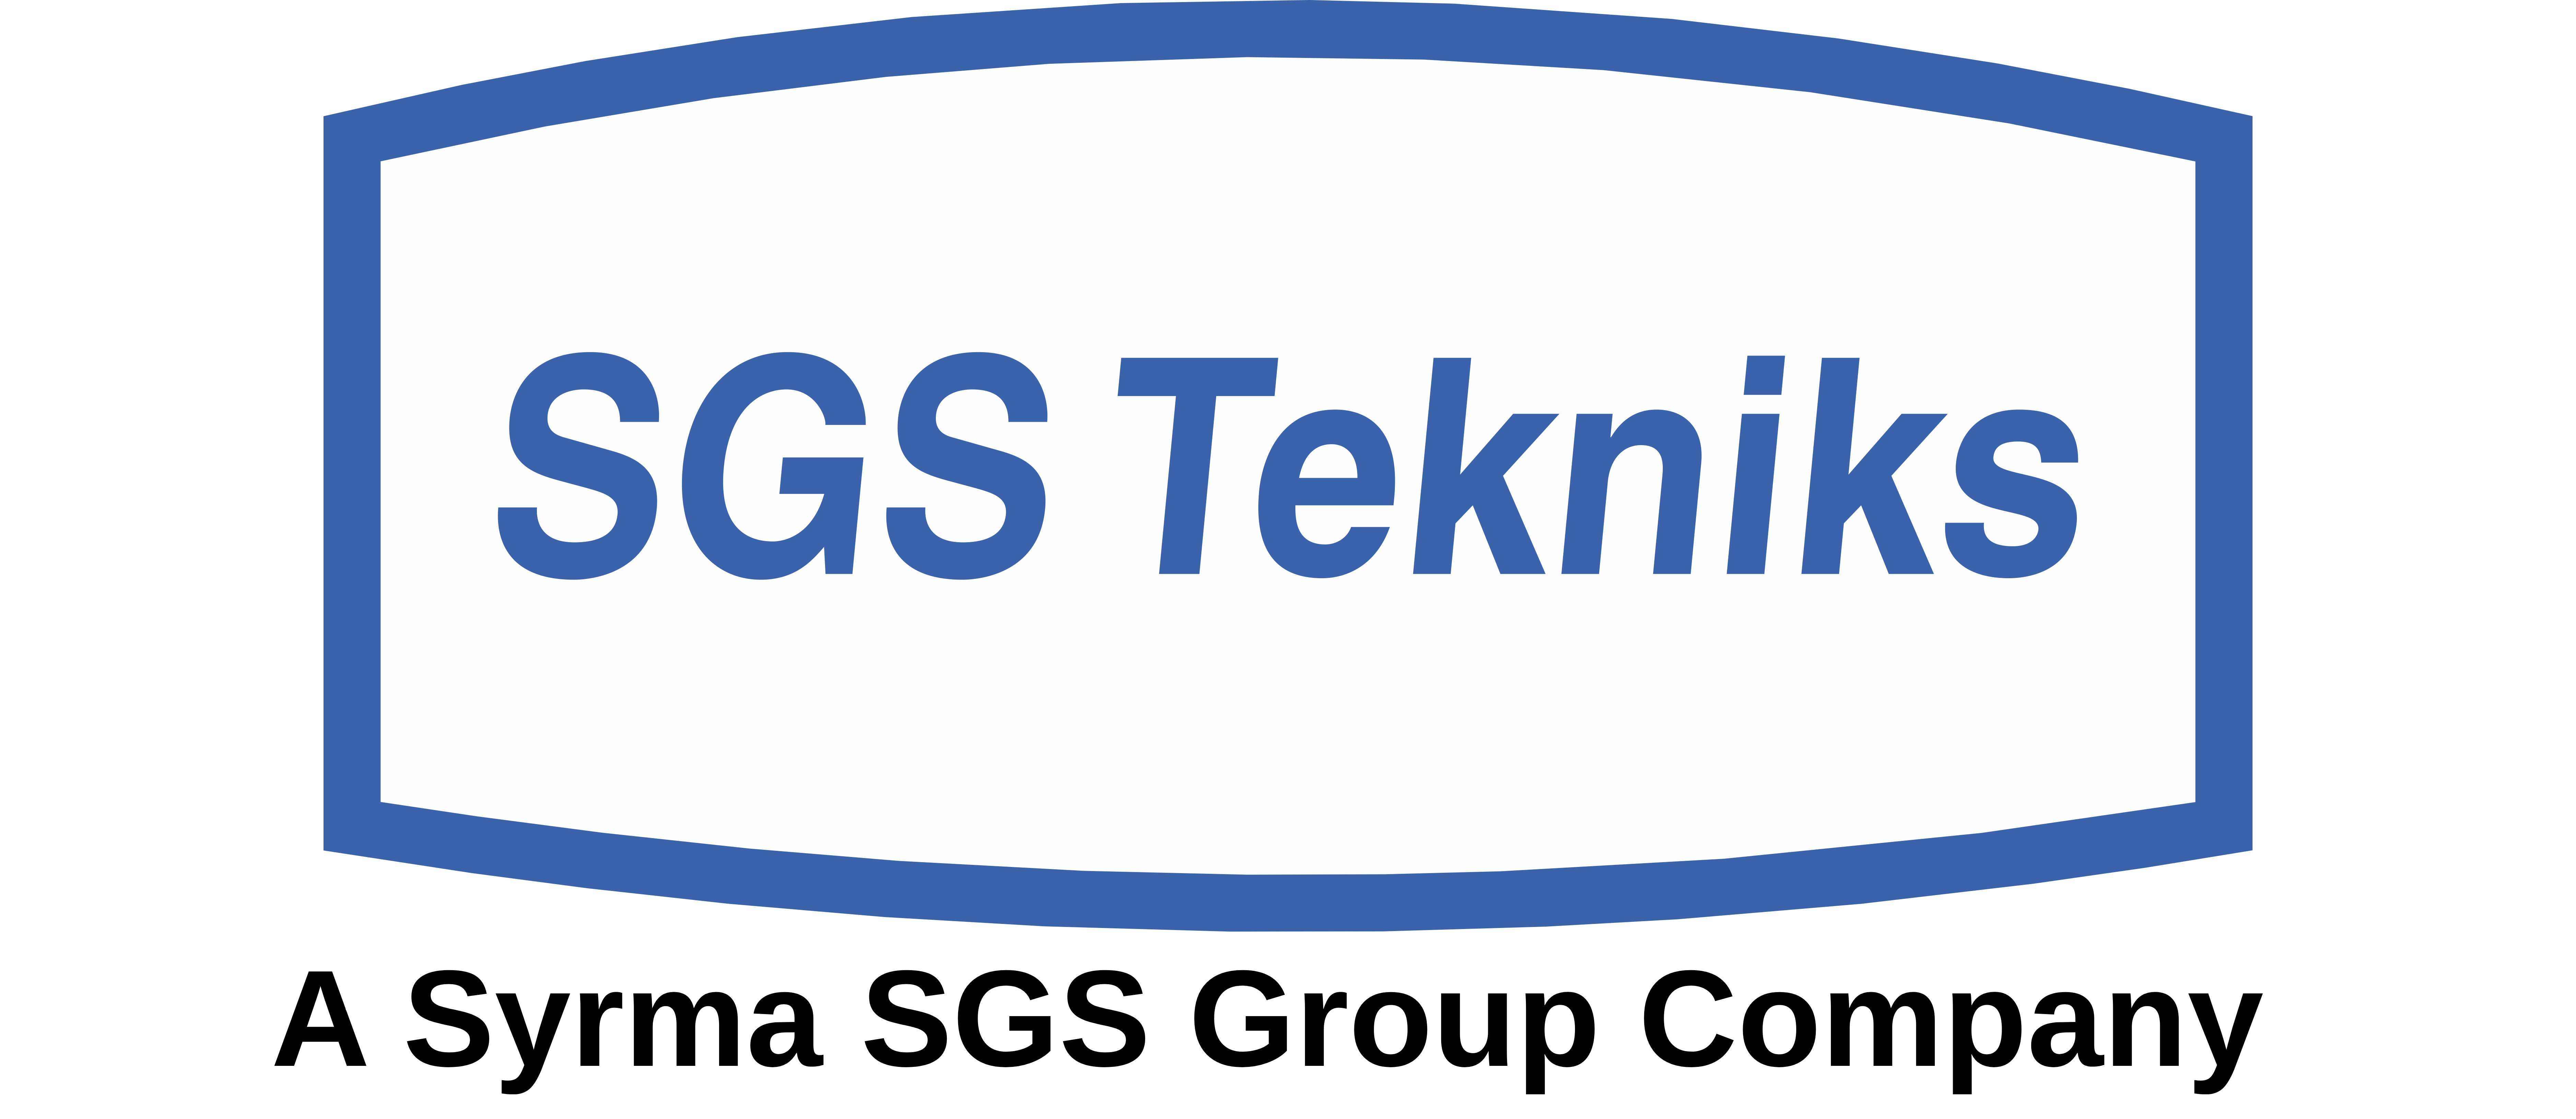 SGS Tekniks Manufacturing Pvt Ltd